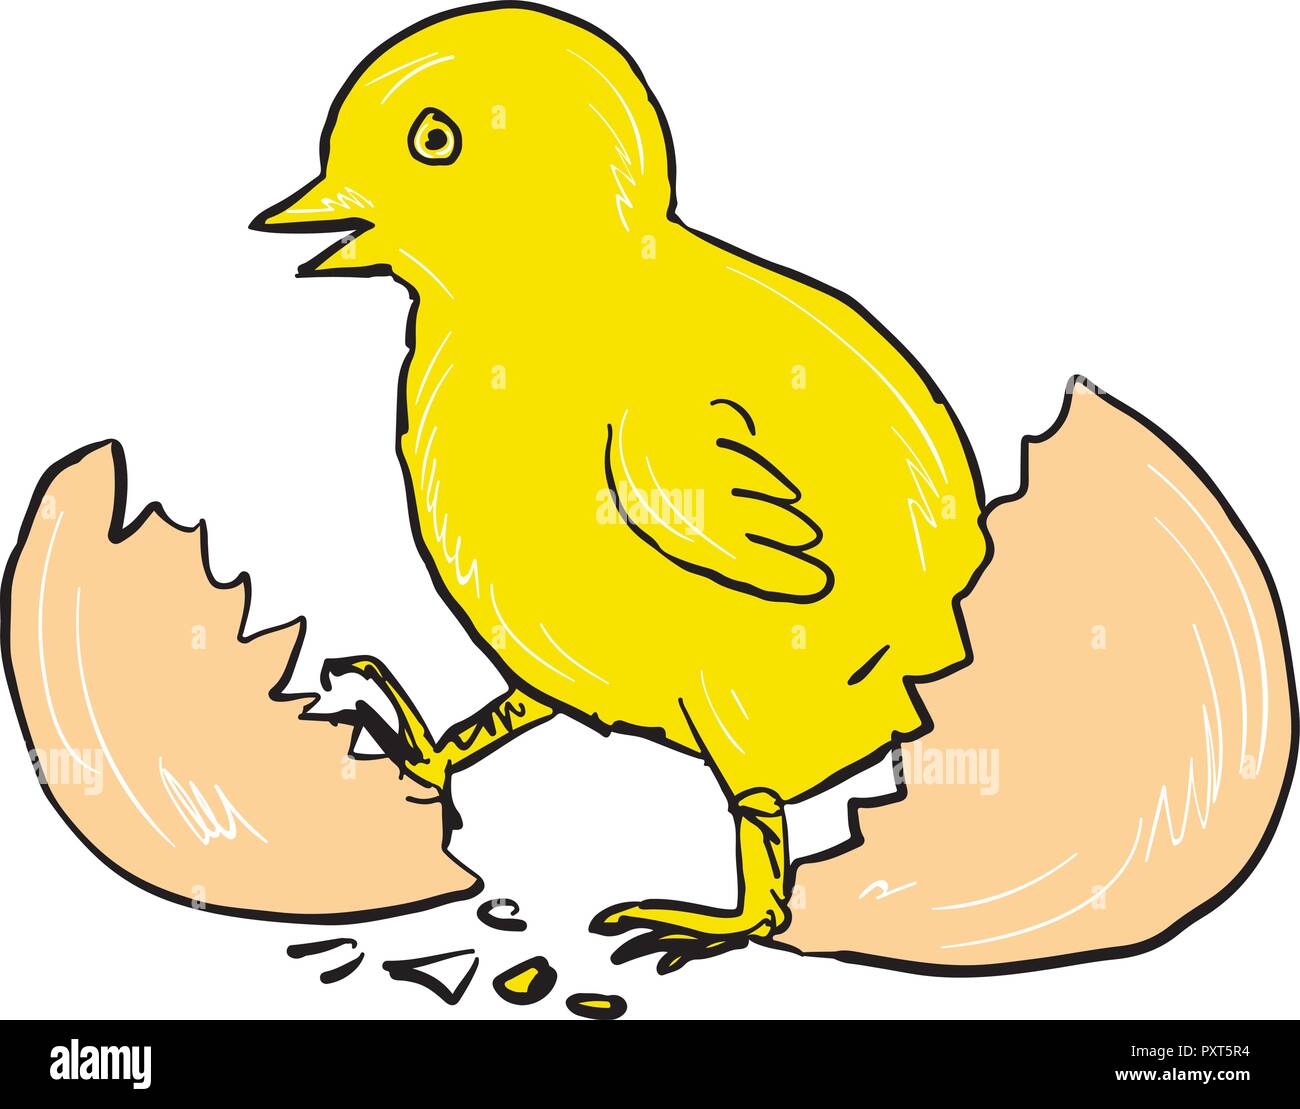 Disegno stile sketch illustrazione di un pulcino di cracking fuori da cova delle uova isolate su sfondo bianco. Illustrazione Vettoriale